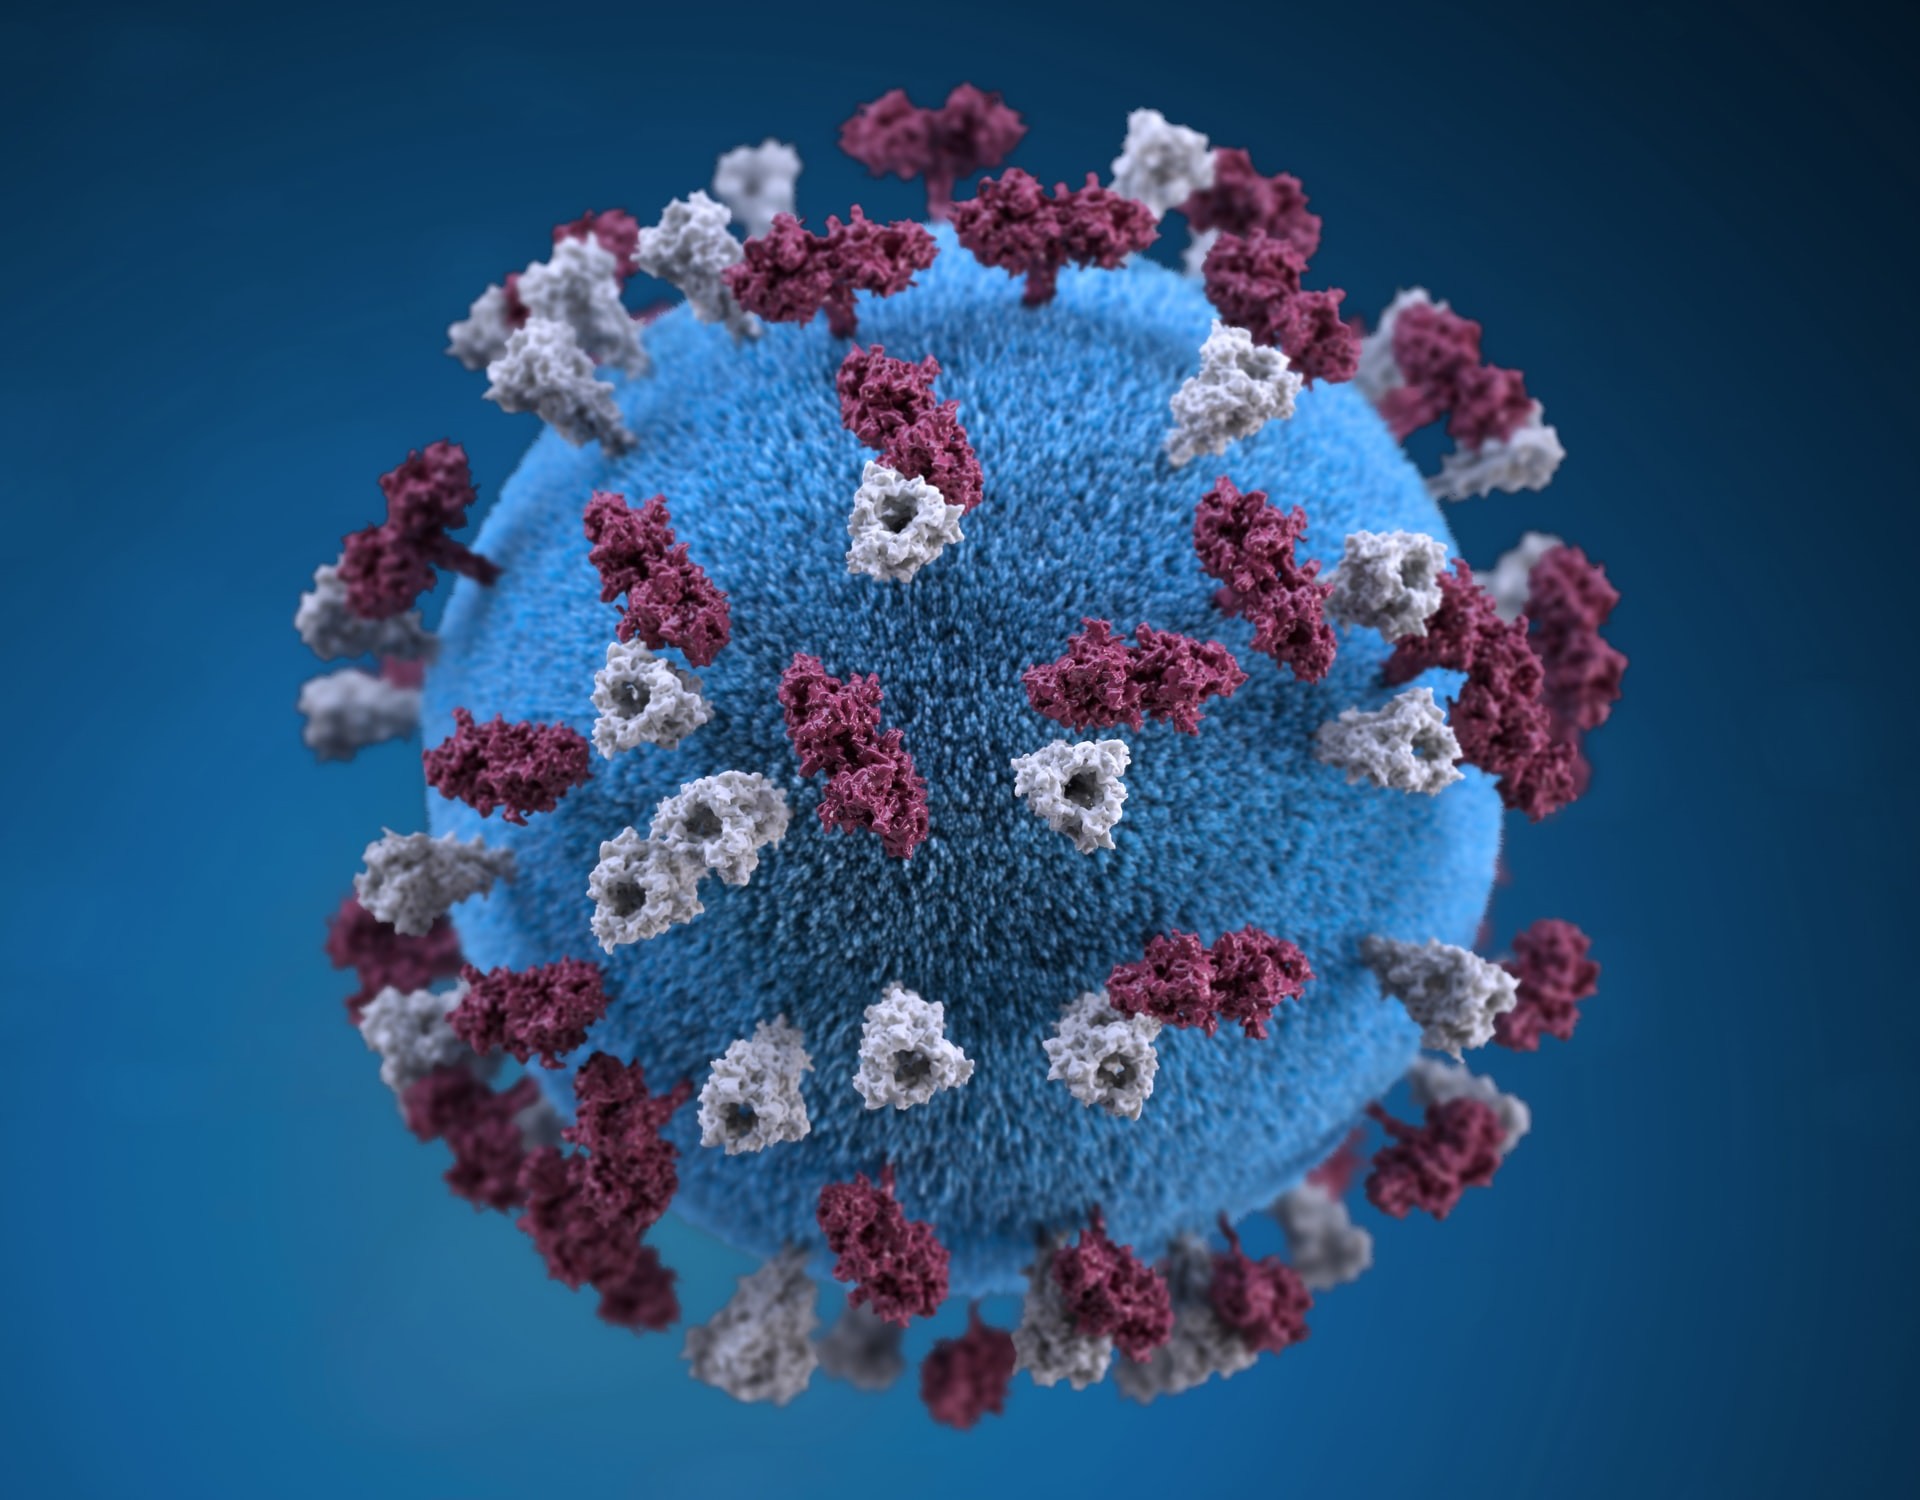 Considerando padrão de 7 anos, cientistas já estão se preparando para a próxima pandemia (Foto: CDC/Unsplash)